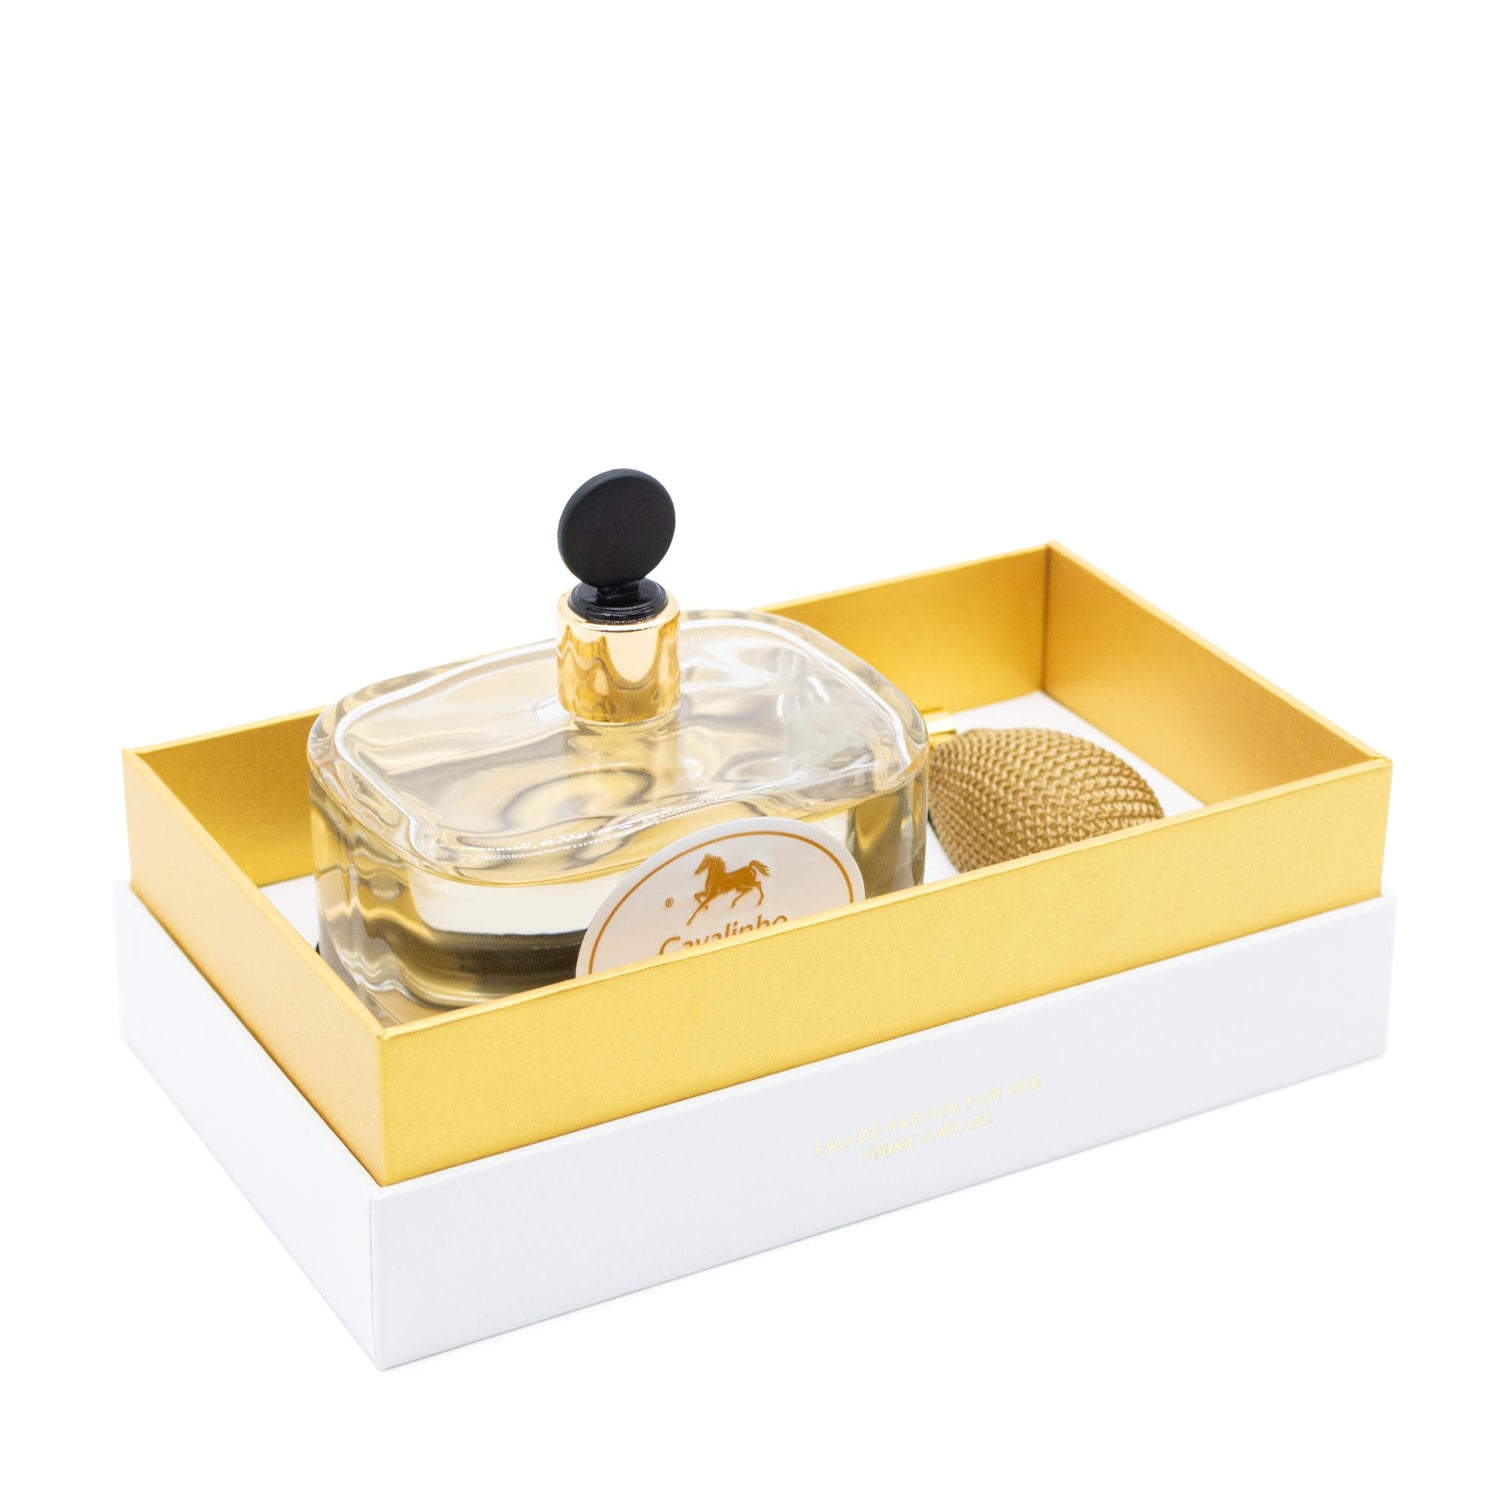 Cavalinho Cavalinho Gold Perfume - 100ml - 38010003.00.10_2